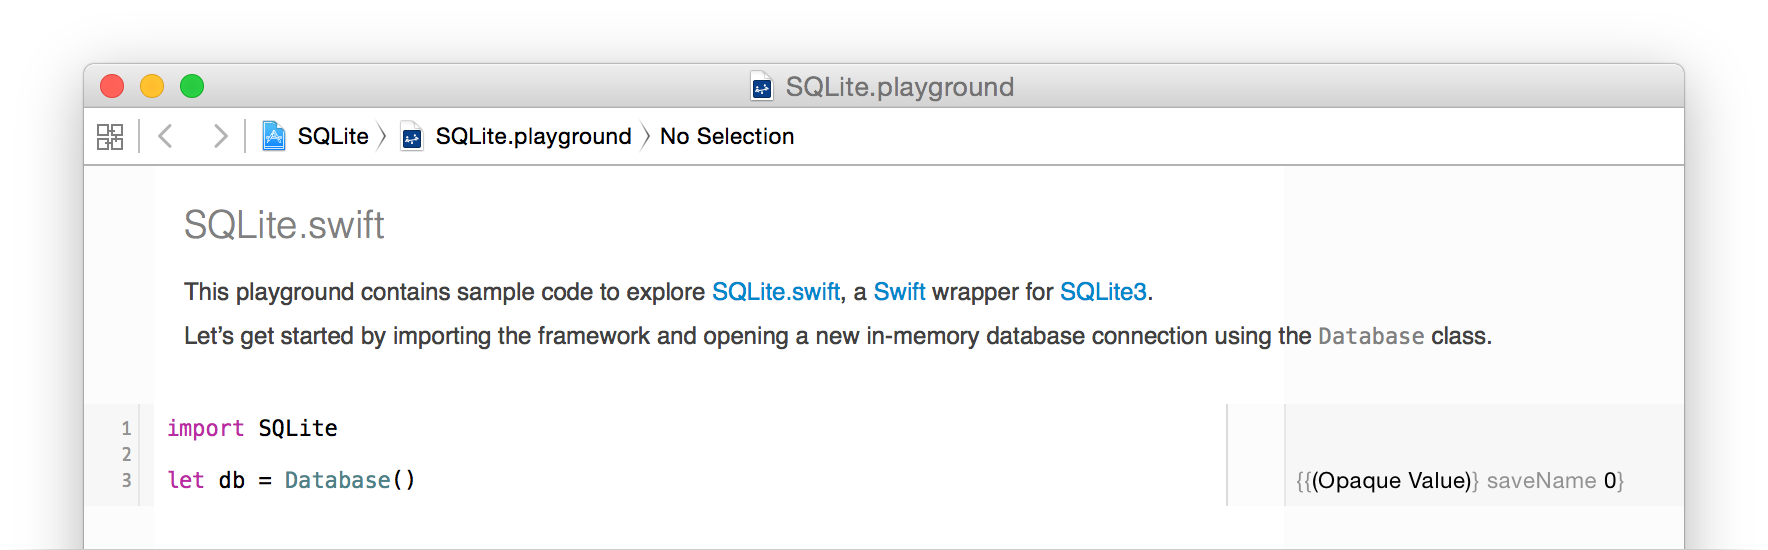 SQLite.playground Screen Shot